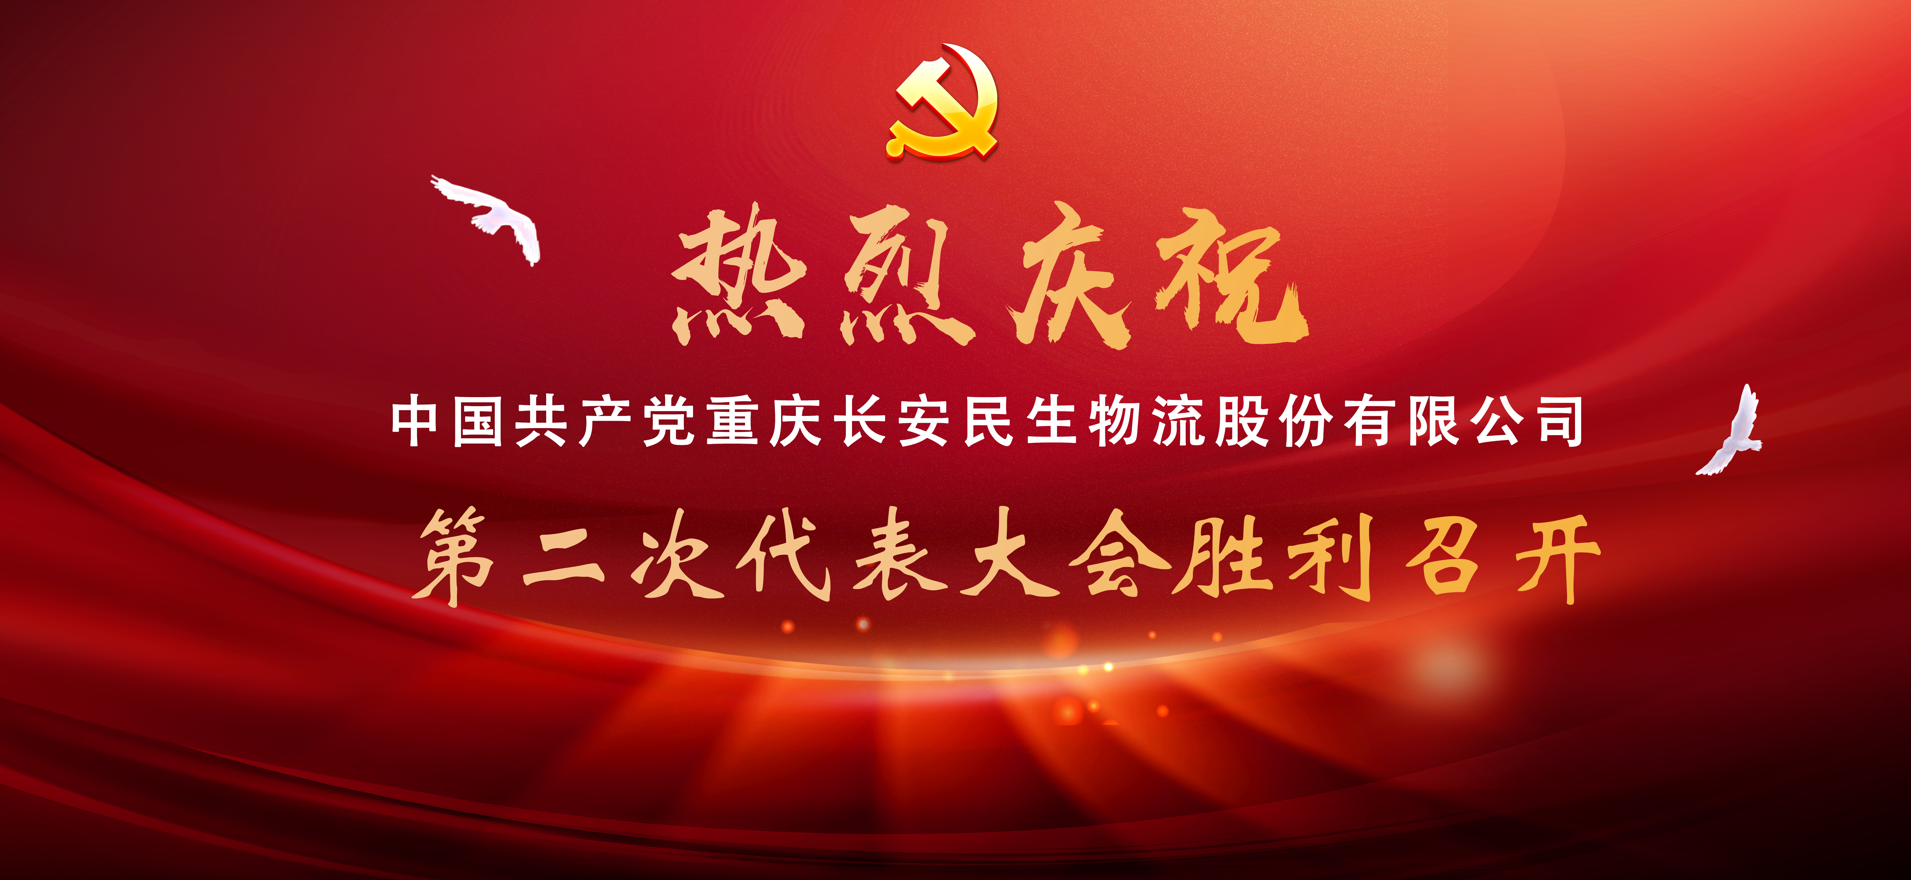 中国共产党重庆长安民生物流股份有限公司第二次代表大会胜利召开